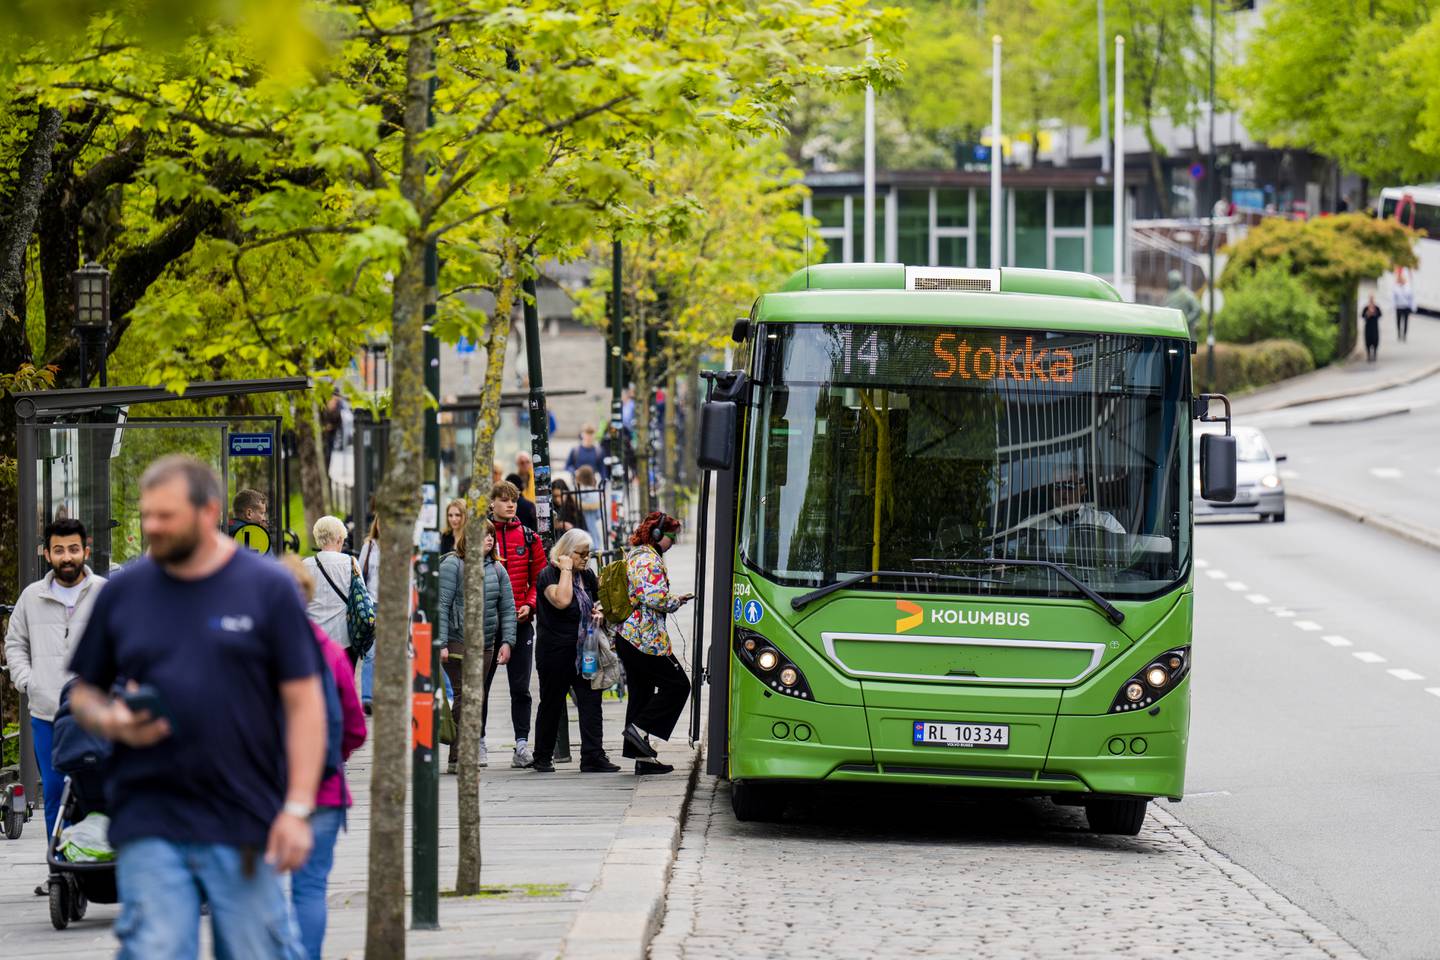 Siden juli har det vært gratis i reise med bussen i Stavanger, men så langt er det uvisst hvor mange flere som har begynt å reise kollektivt som følge av gratistilbudet, ifølge kollektivselskapet Kolumbus.